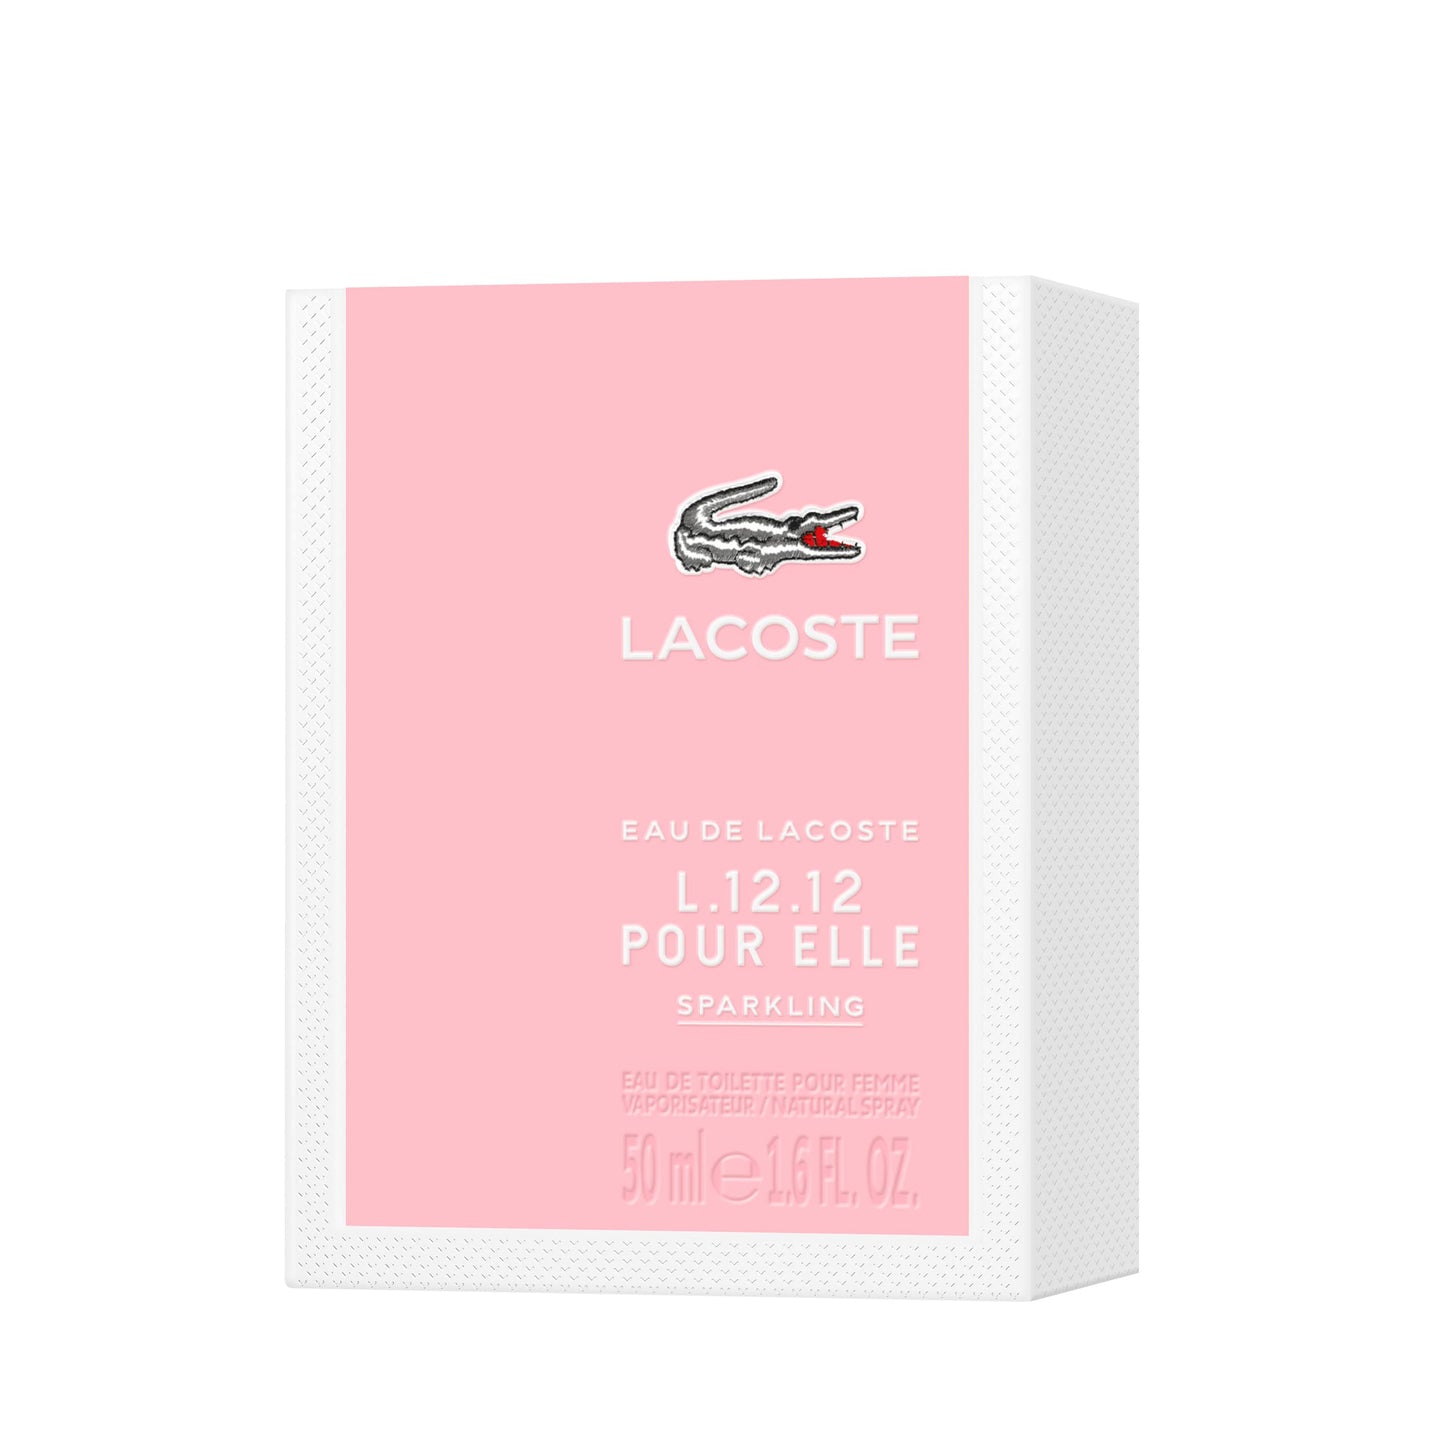 LACOSTE L.12.12 Sparkling Eau De Toilette For Women, 50 ml